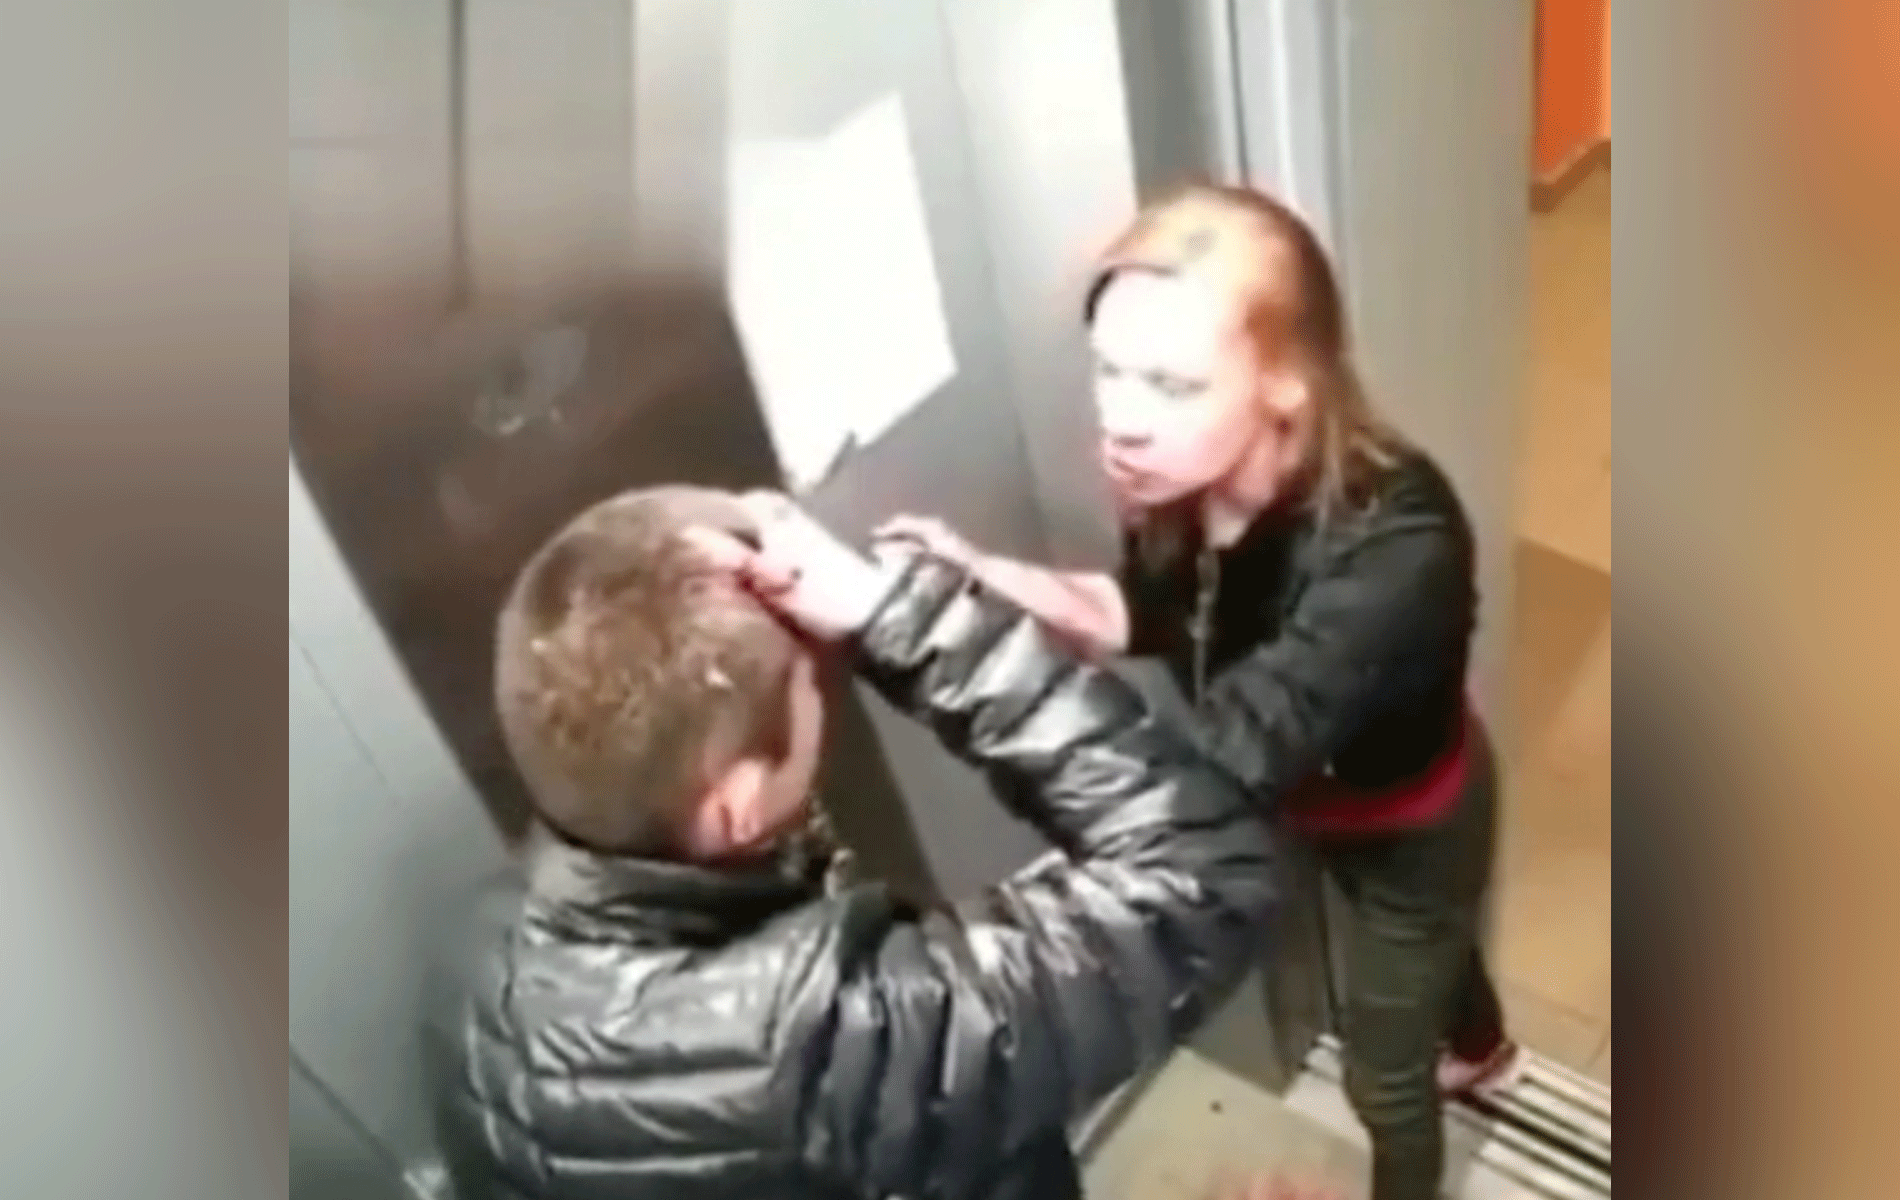 🎥 Meisje slaat jongen van zich af in lift! 'Camera niet gezien'